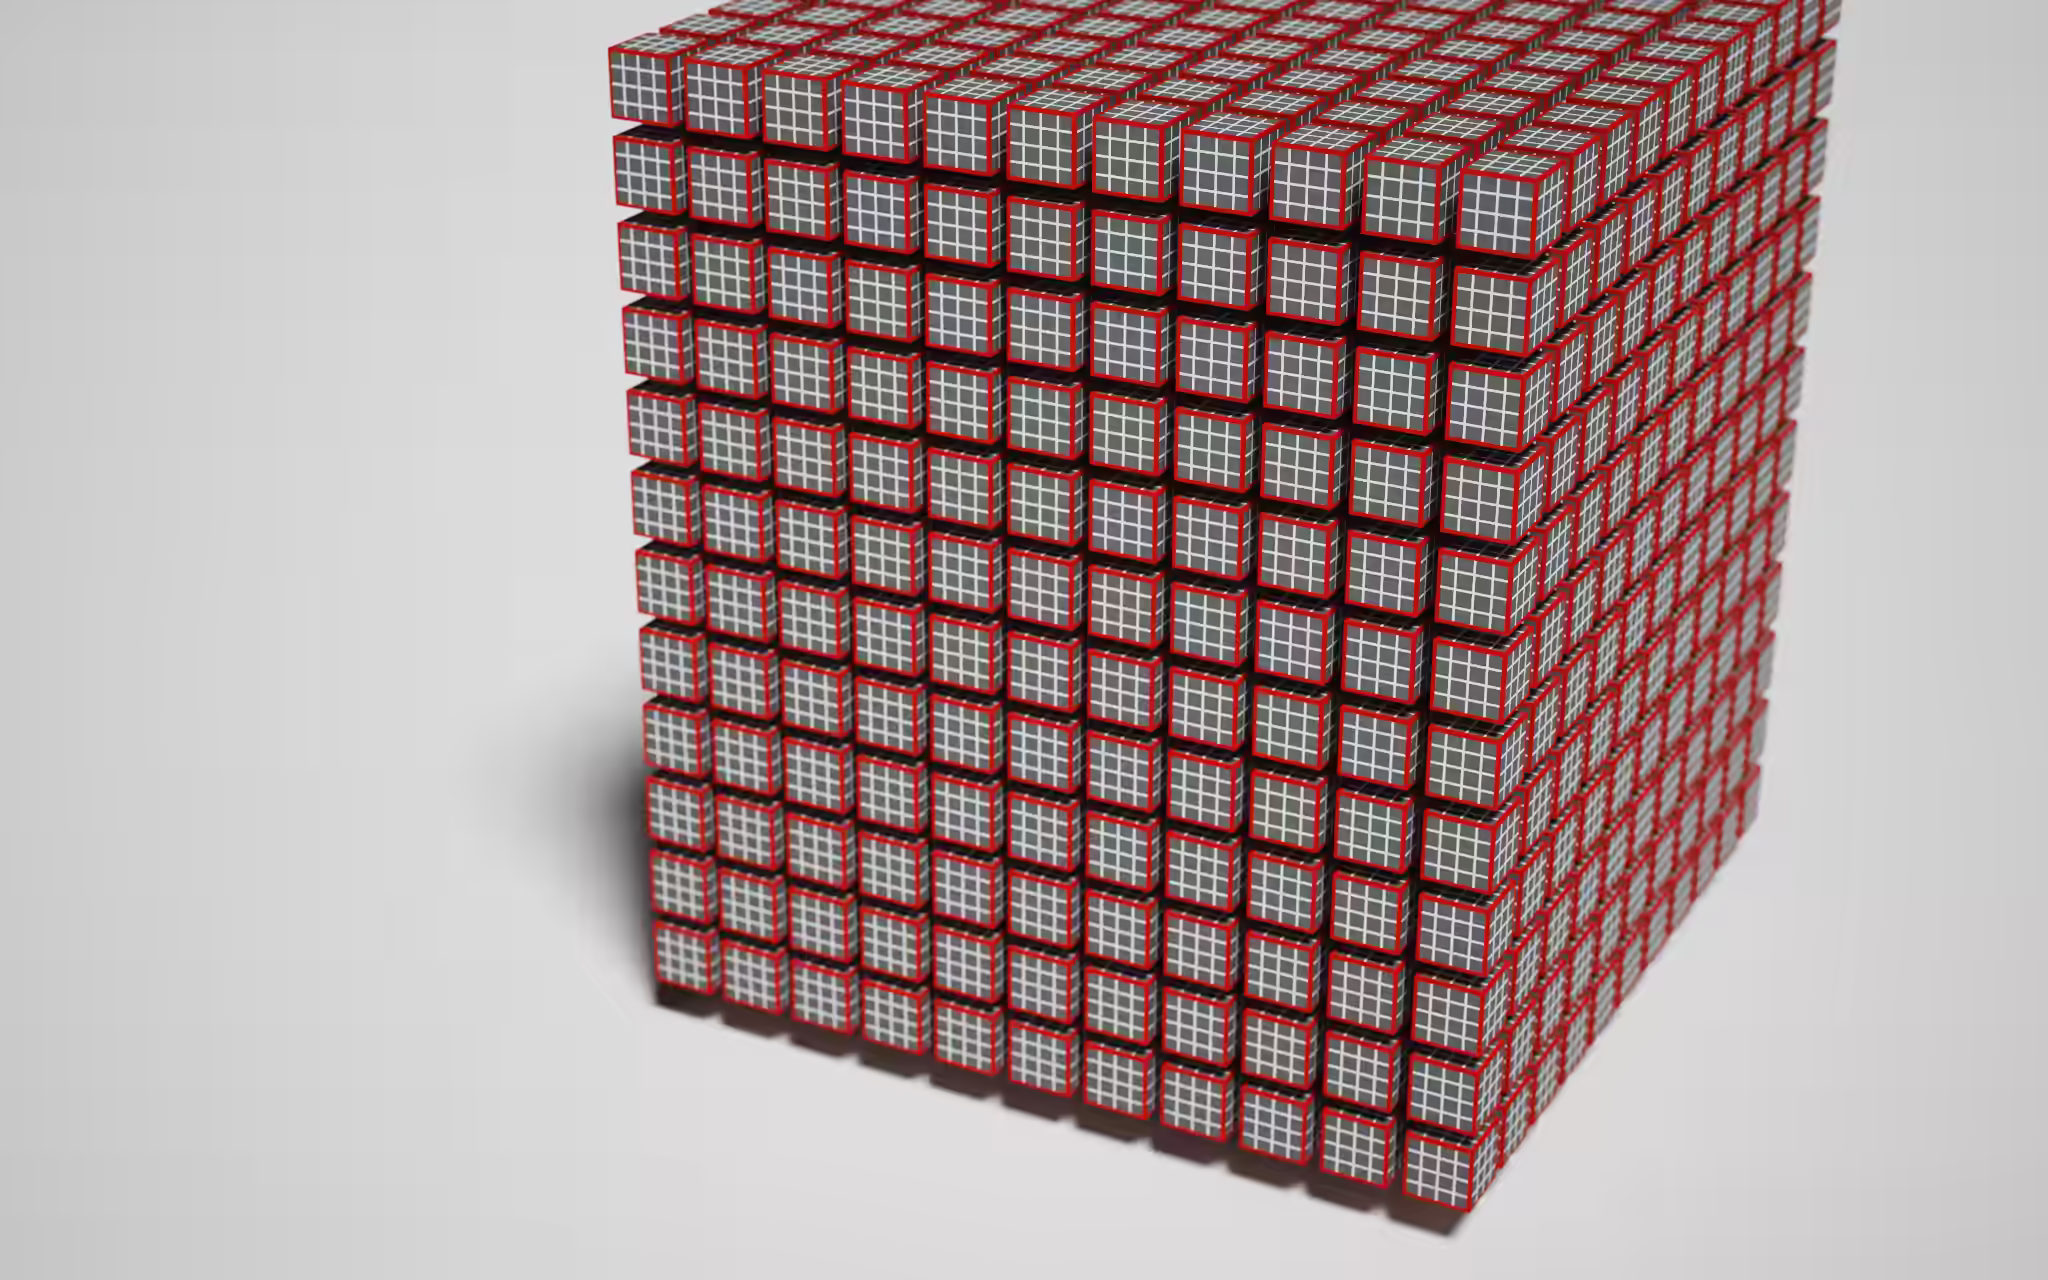 这是一个工作负载（workload），白色边框的立方体是工作项（work item），红色边框的立方体是工作组（workgroup）